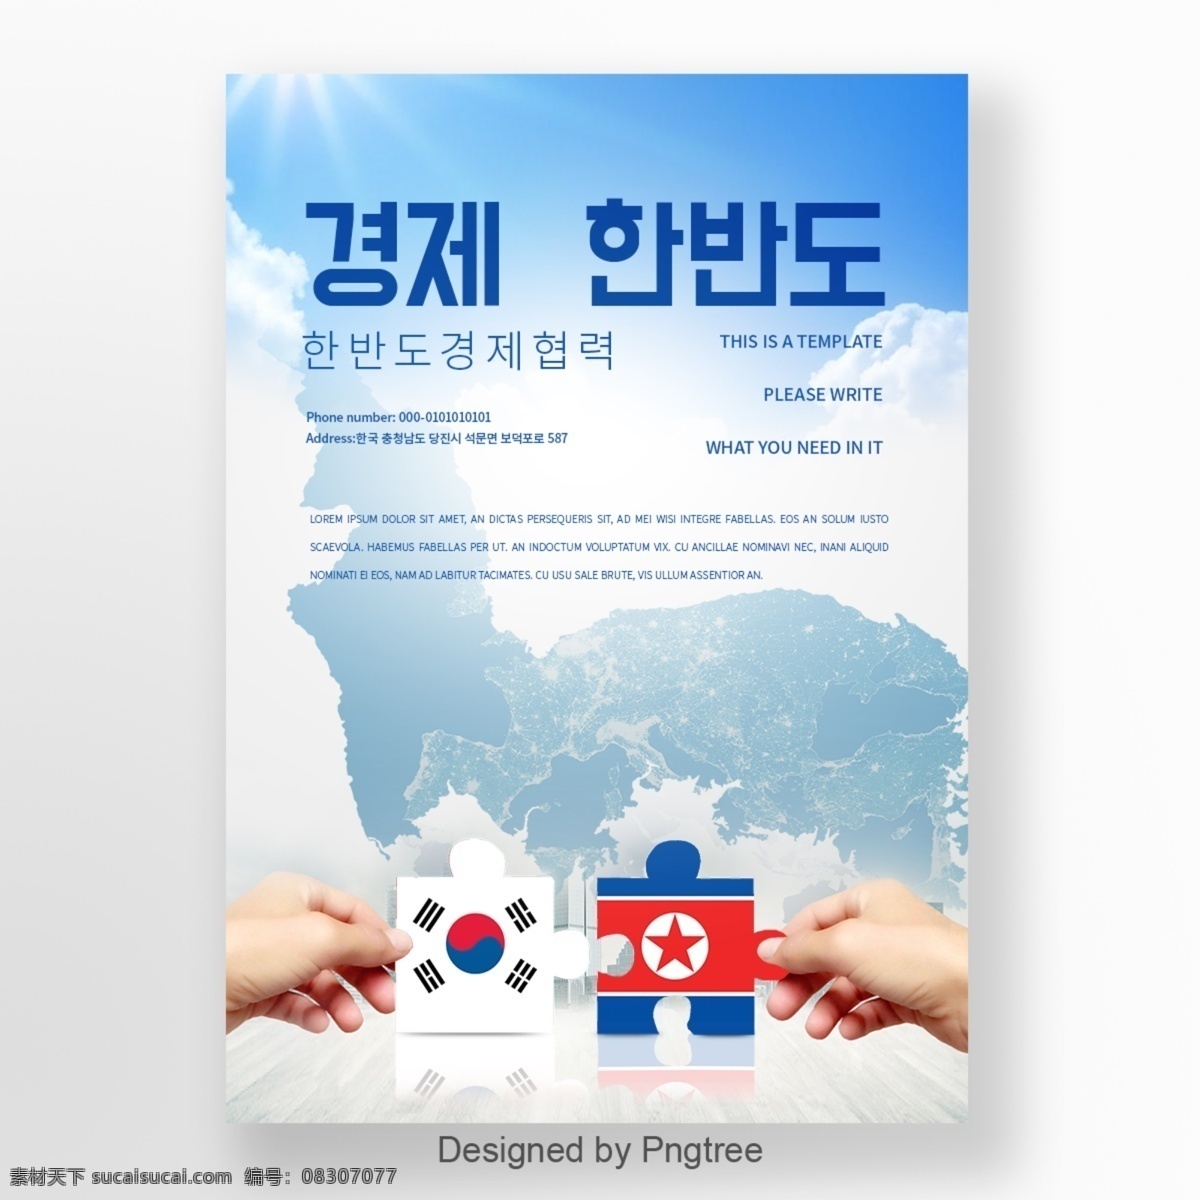 朝鲜半岛 地图 蓝色 国旗 马赛克 社会 大气 商业 海报 手 拼图游戏 商务 谈谈关于